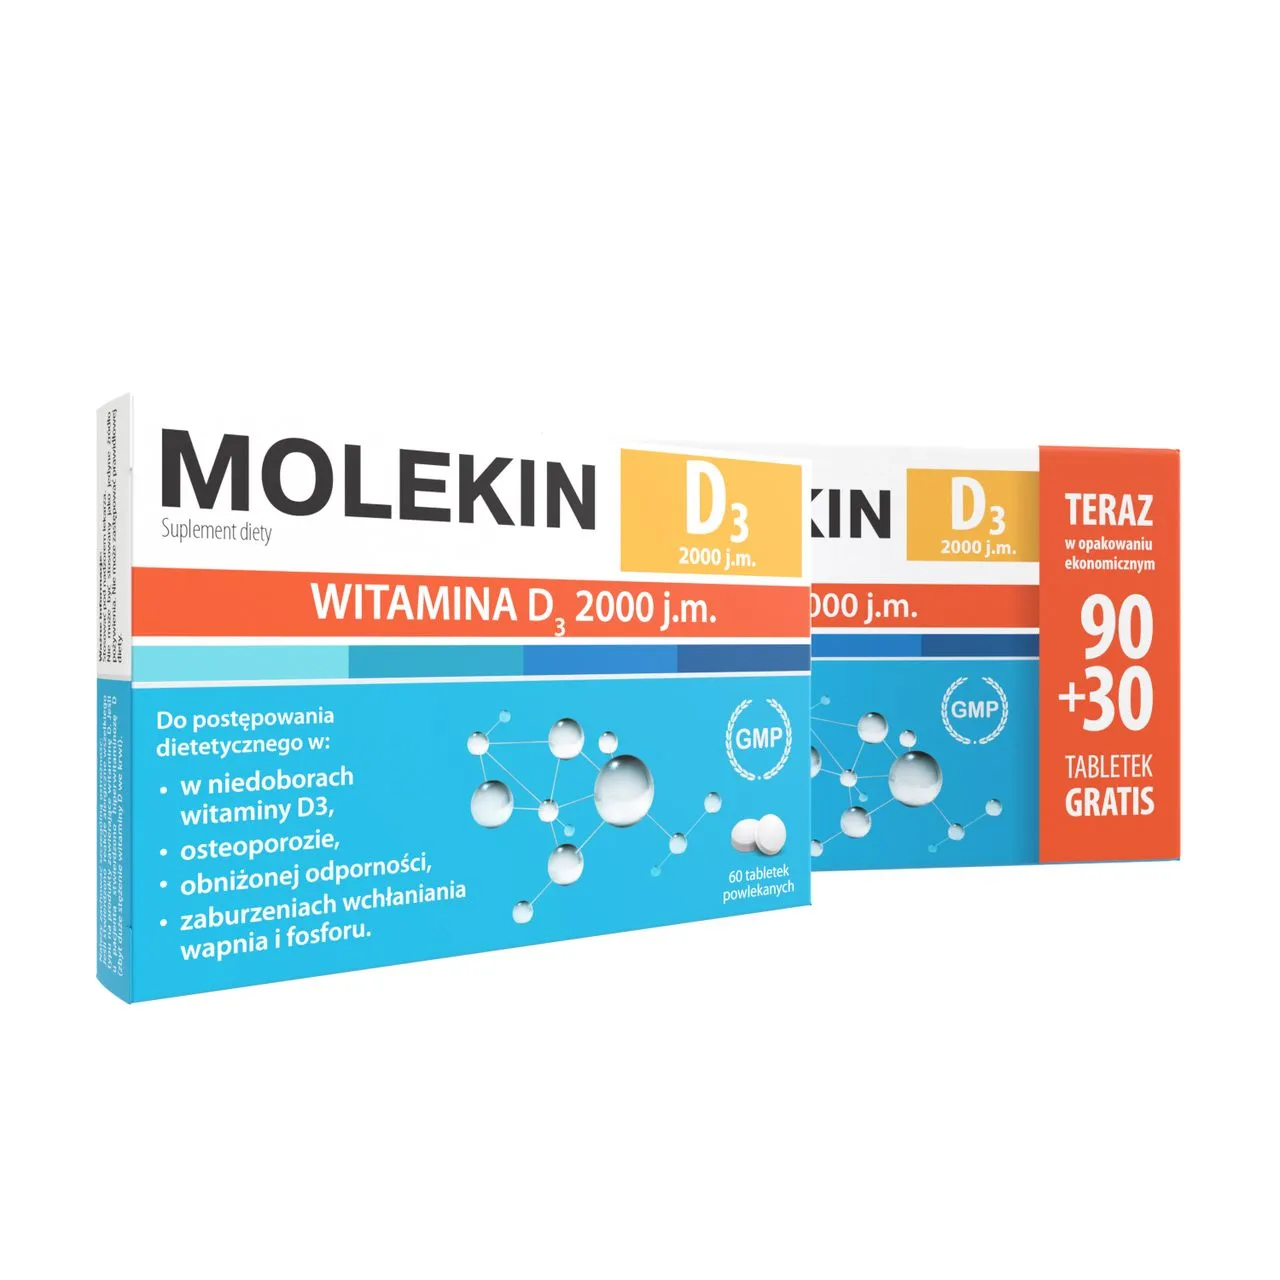 Molekin D3 2000 j.m., suplement diety, 30 tabletek